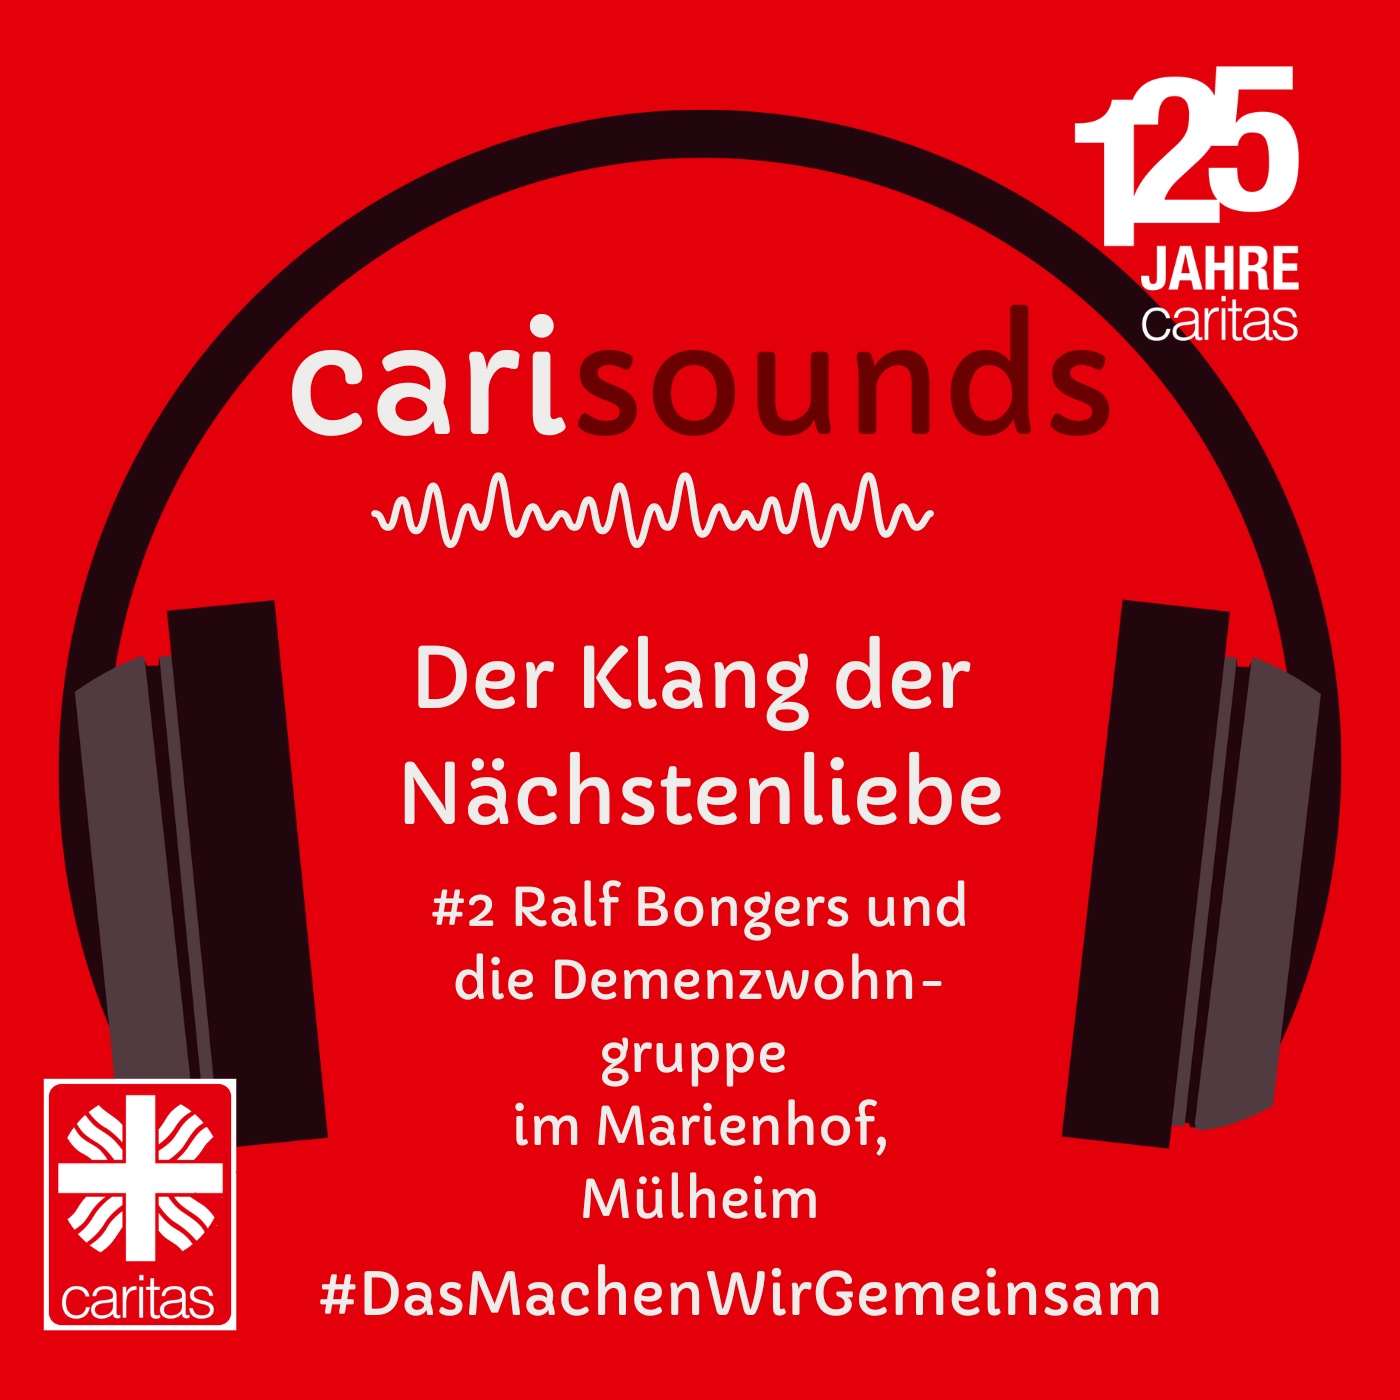 #2 carisounds - Der Klang der Nächstenliebe - Ralf Bongers und die Demenzwohngruppe im Marienhof in Mülheim